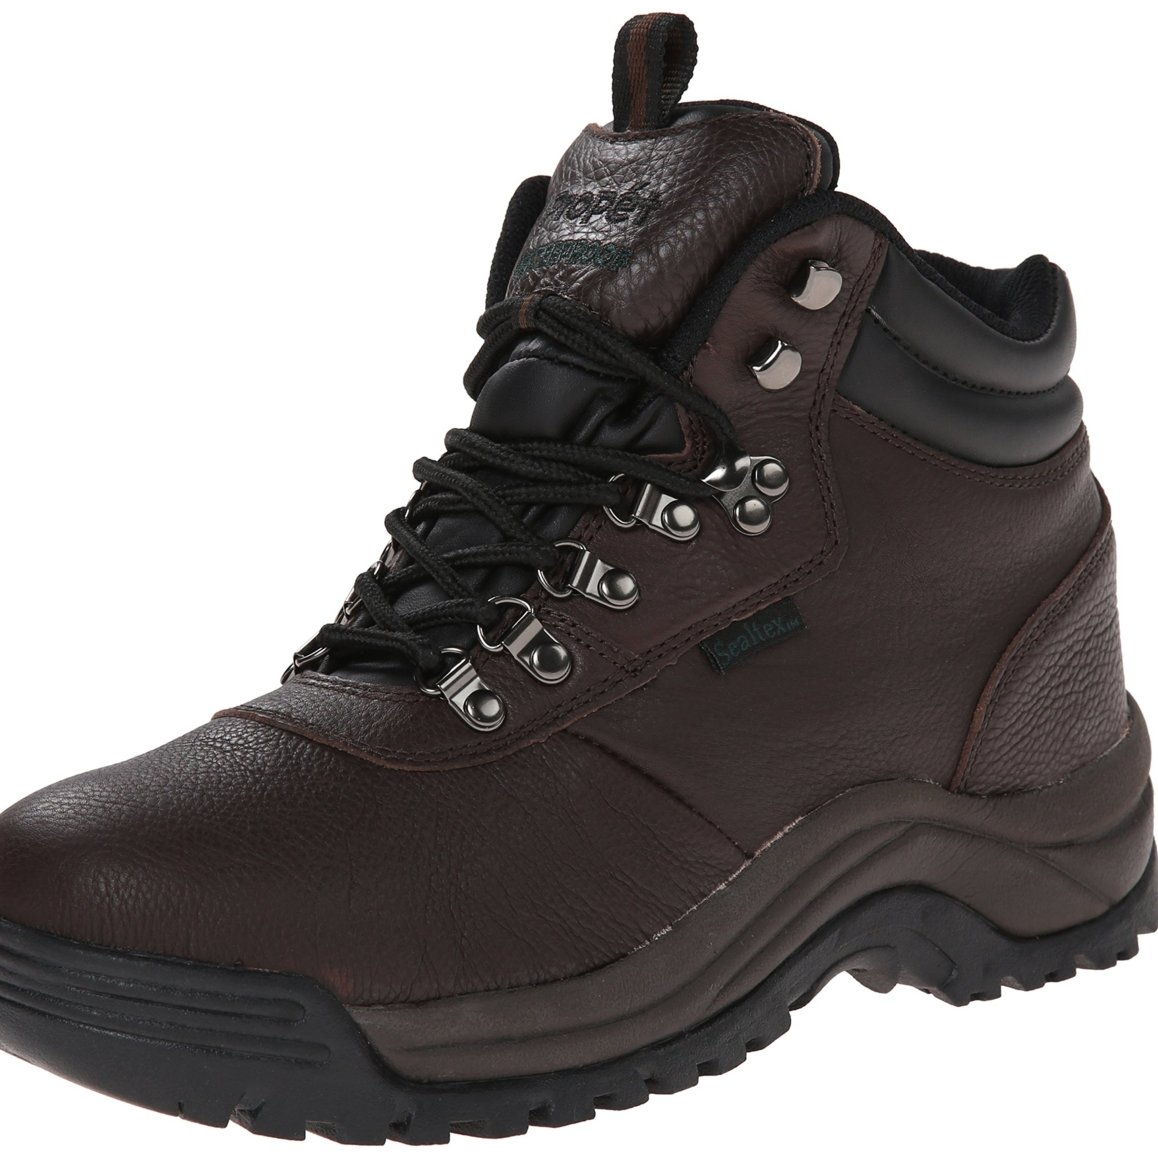 Propet Men's Cliff Walker Hiking Boot Bronco Brown - M3188BRO - BRONCO BROWN, 8-D